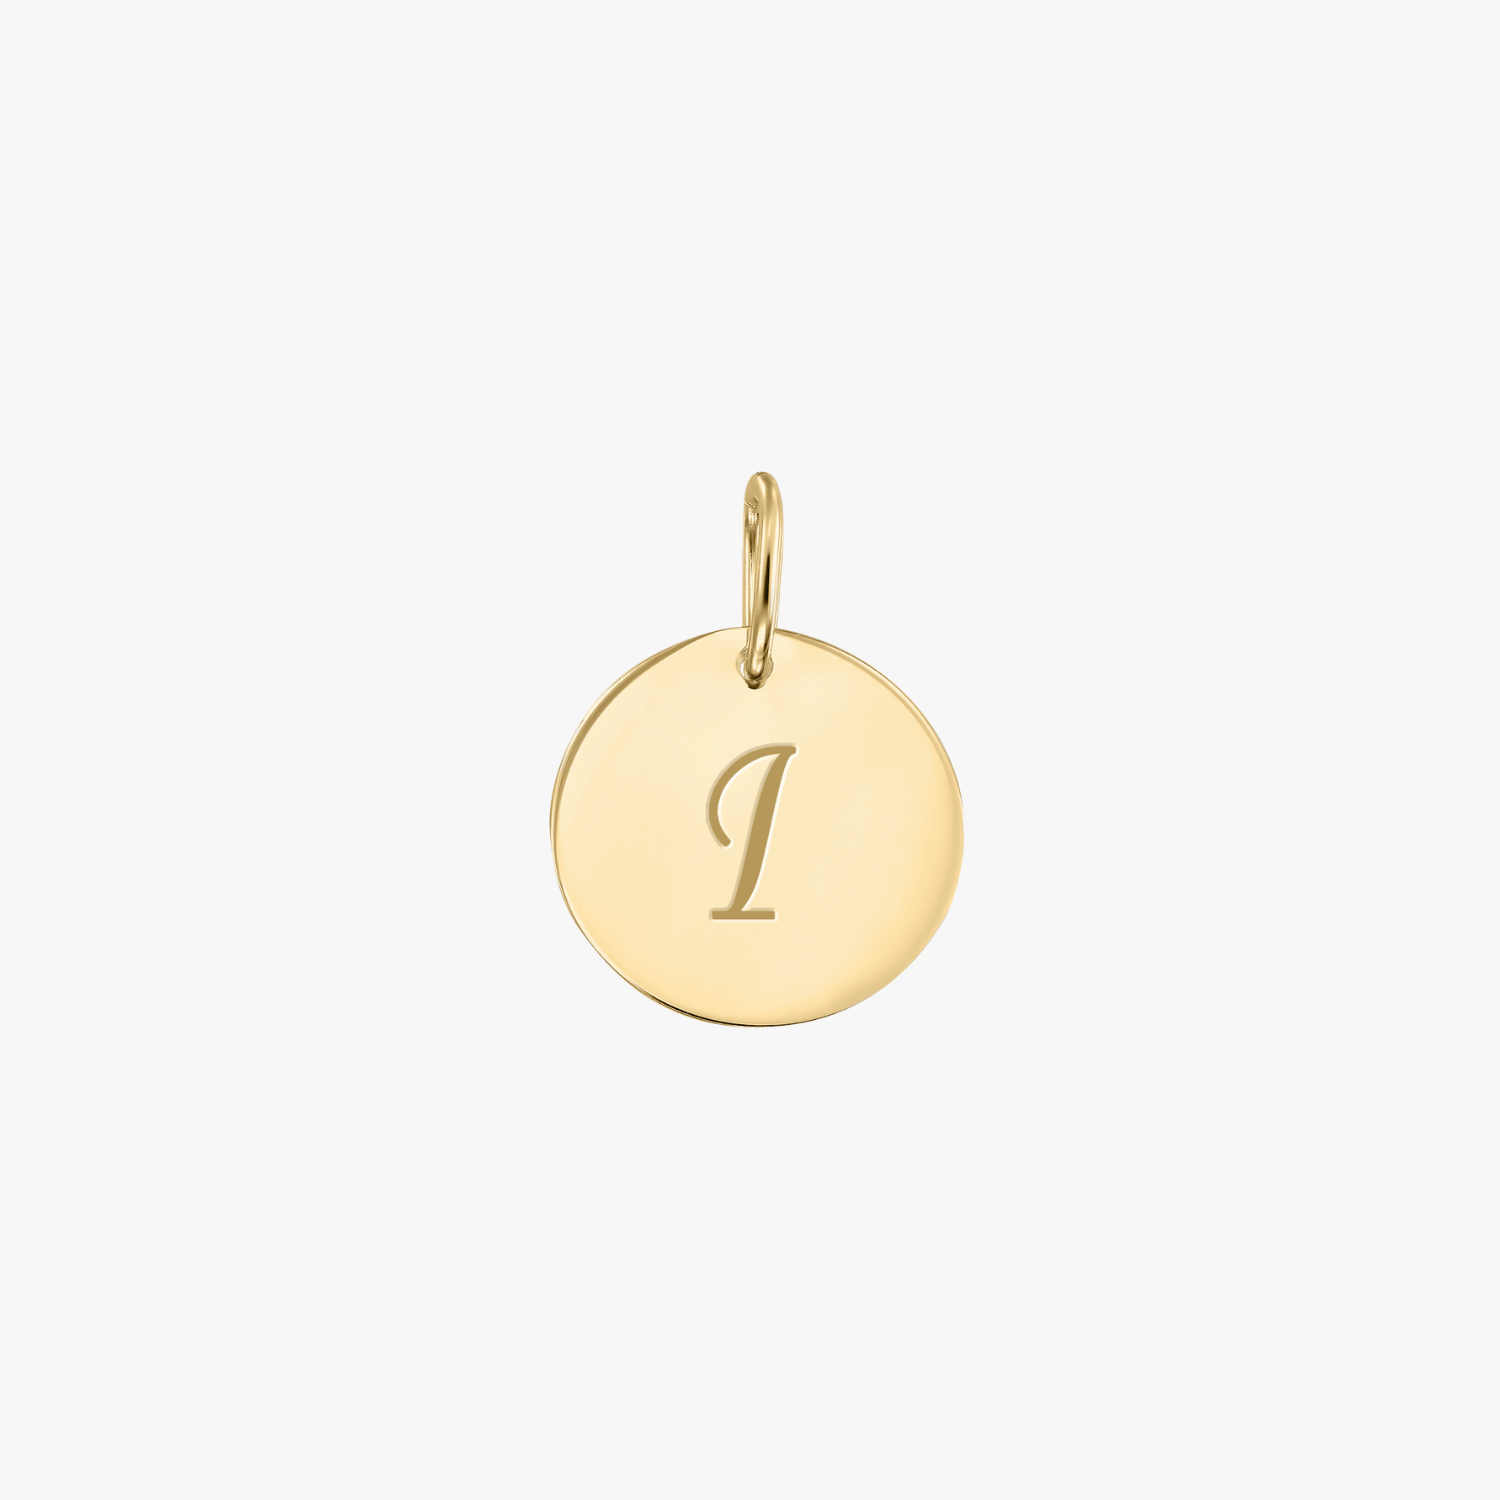 Golden A silver pendant